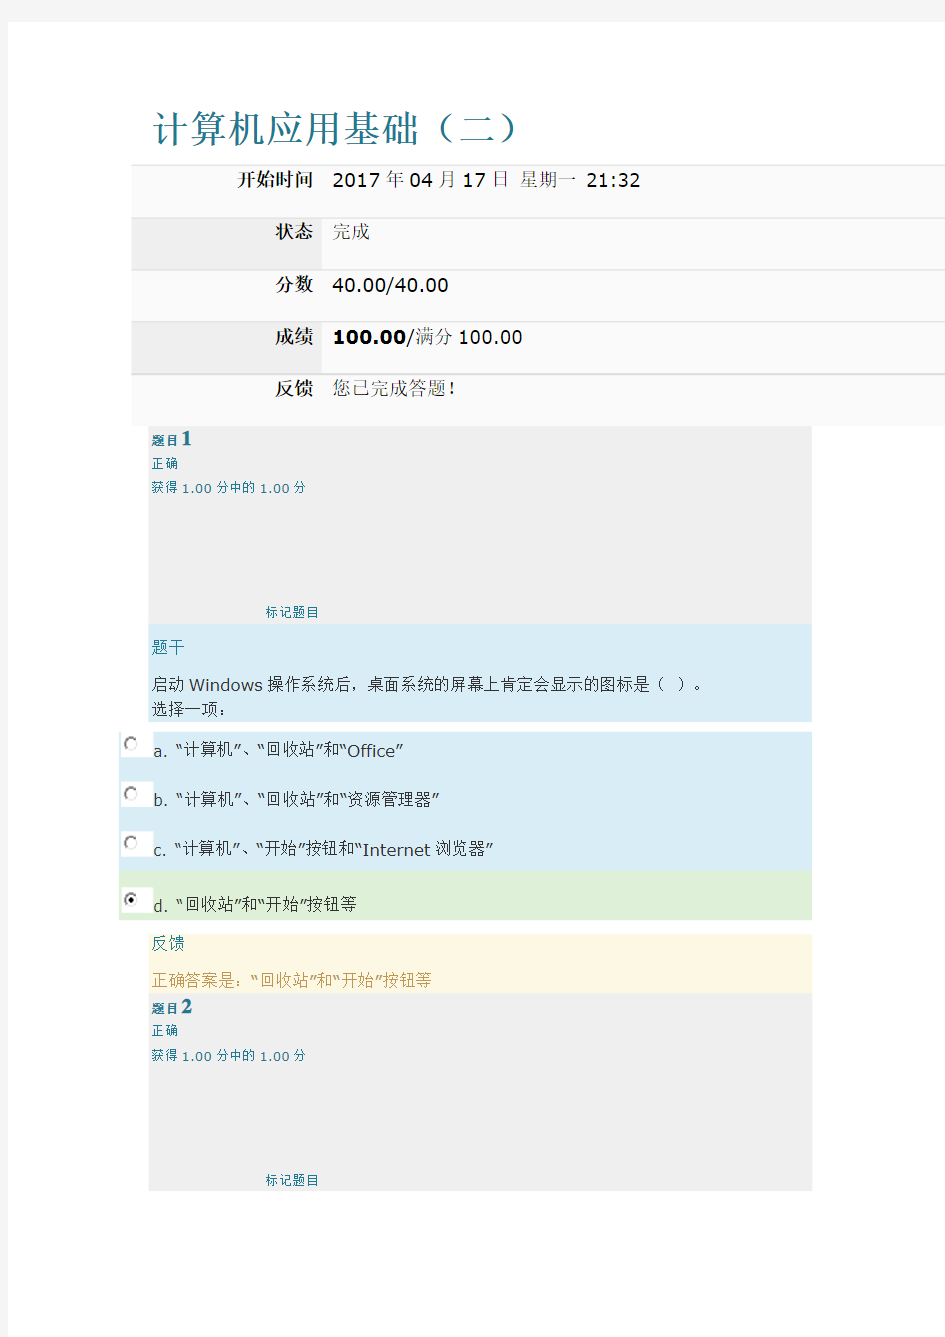 上海交通大学继续教育学院计算机应用基础(二)第二次作业WINDOWS-满分